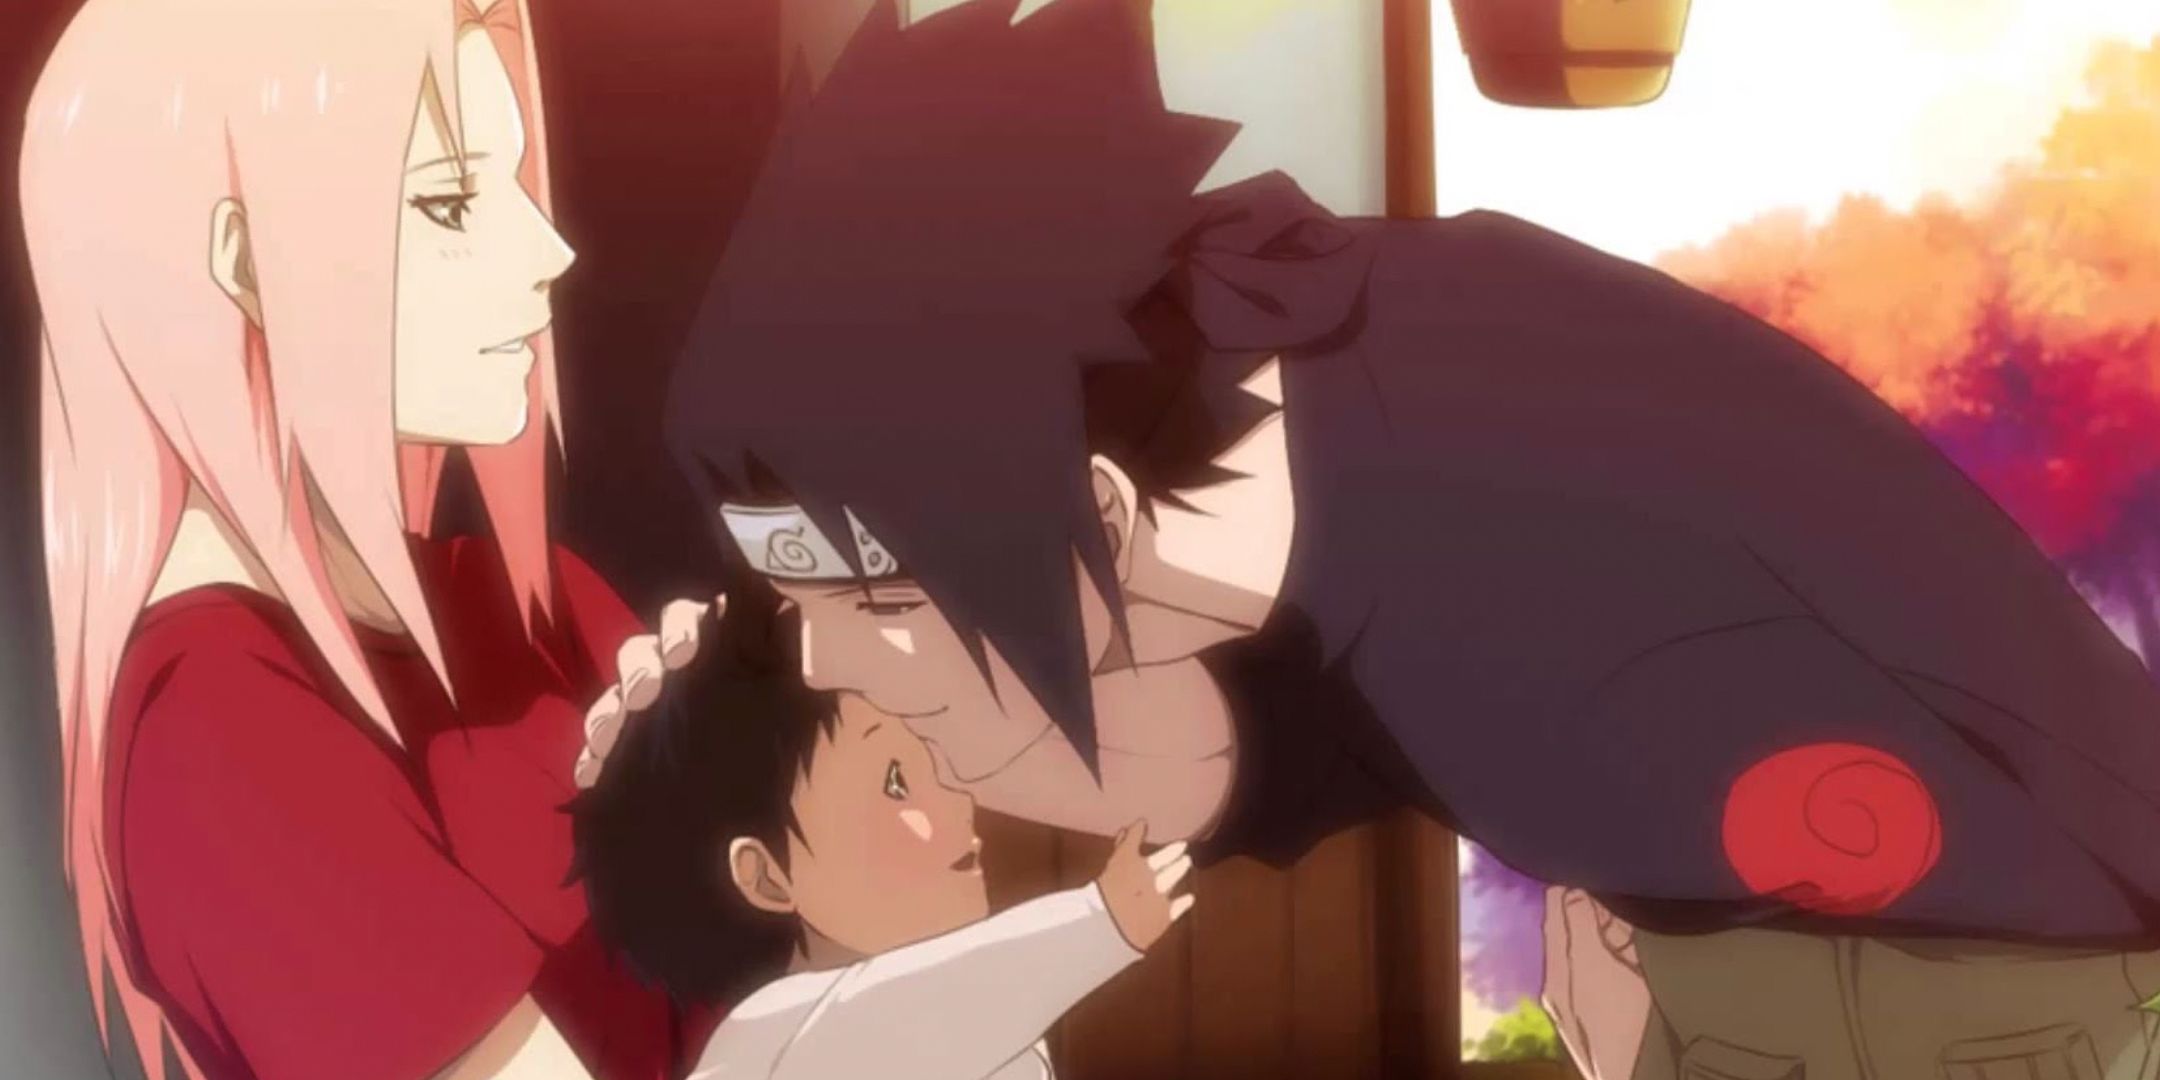 Sakura holds a baby Sarada while Sasuke leans down to her in a Boruto flashback